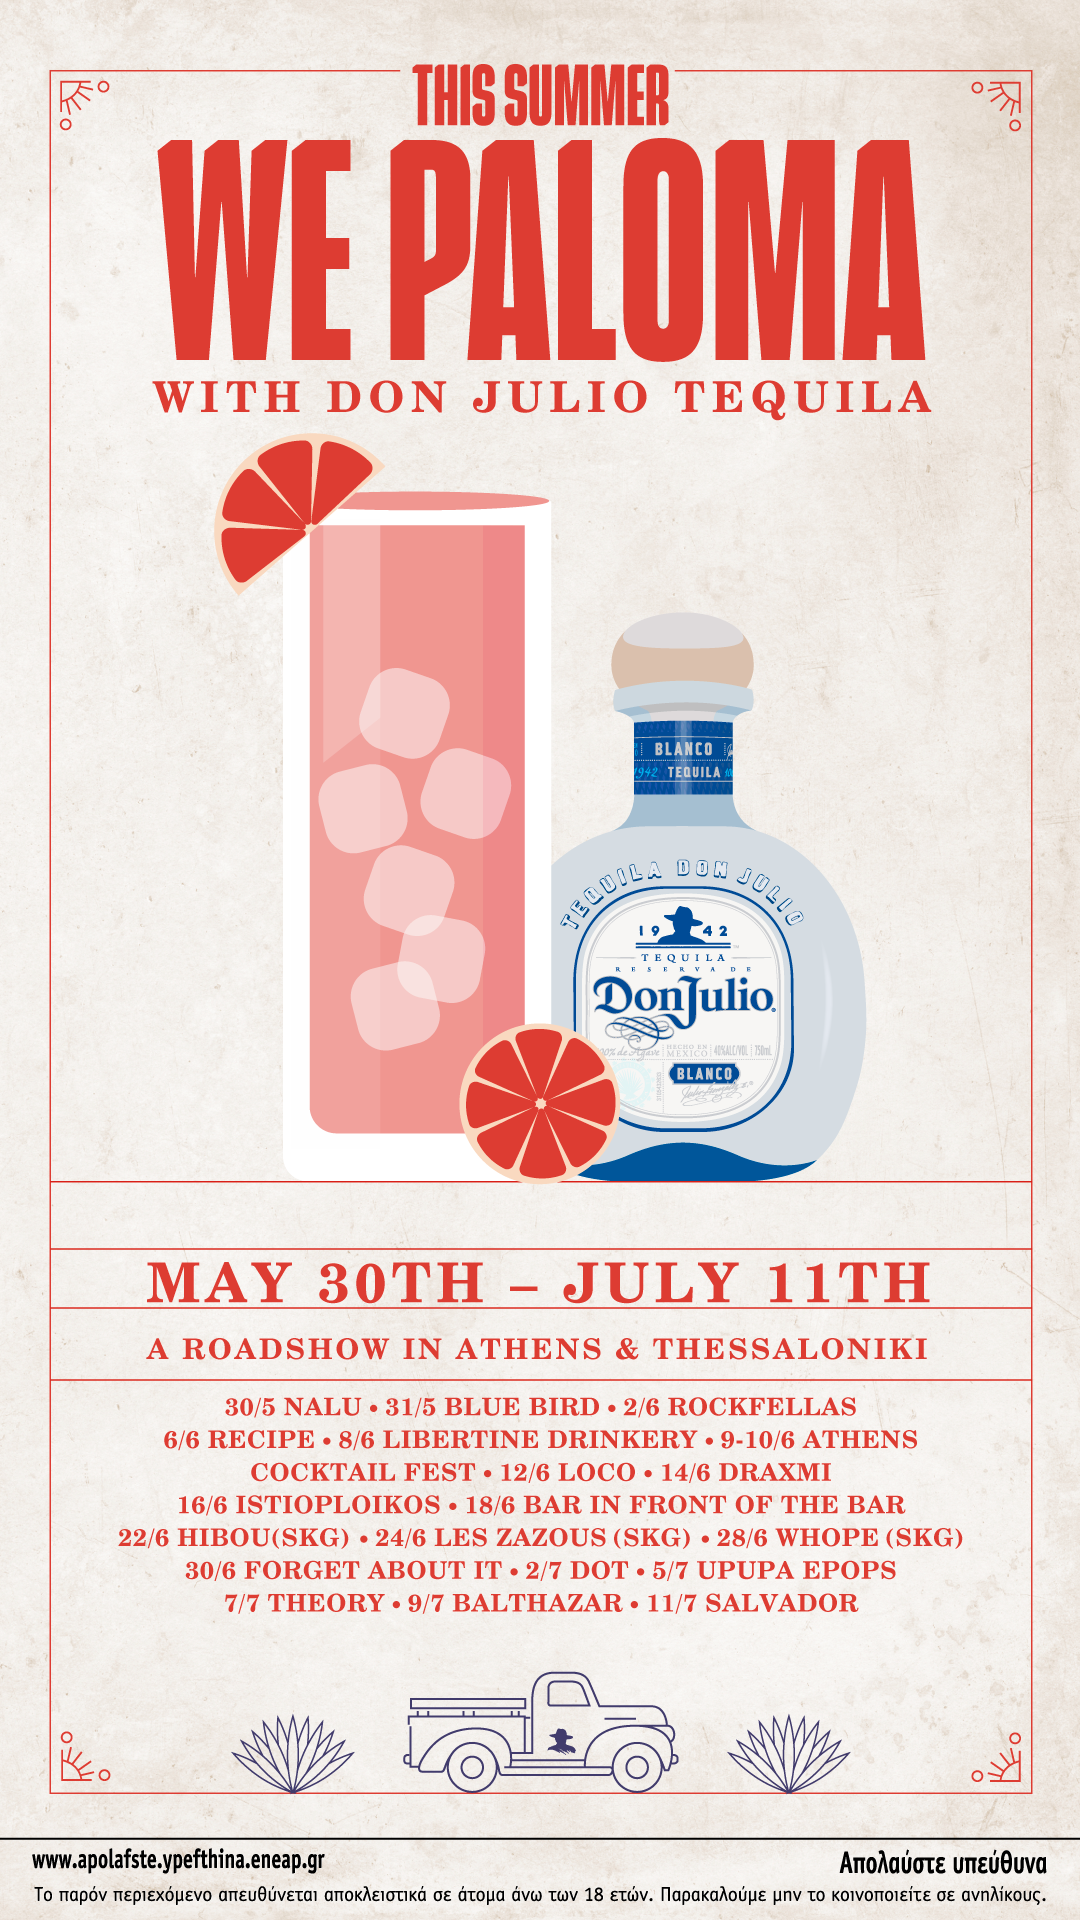 Το Don Julio Paloma Roadshow επισκέπτεται κορυφαία bars & high energy restaurants της Αθήνας & Θεσσαλονίκης από 30 Μαΐου έως 11 Ιουλίου για να τιμήσει το πιο iconic, καλοκαιρινό cocktail, την Paloma με Don Julio tequila.